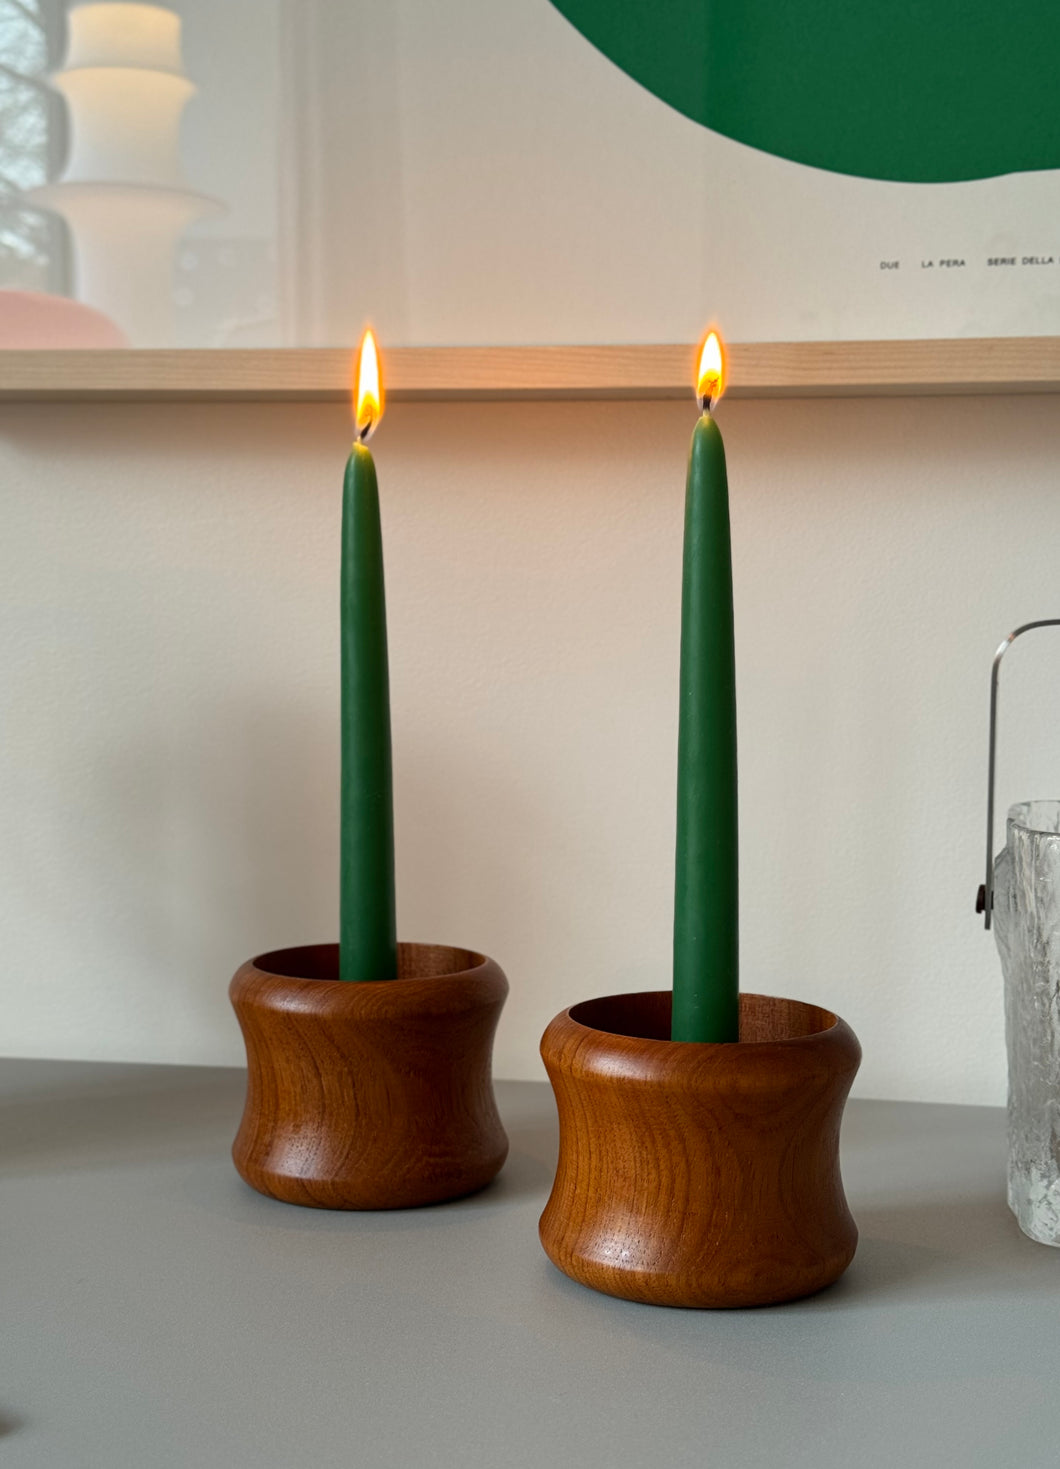 Pair of solid teak candleholders